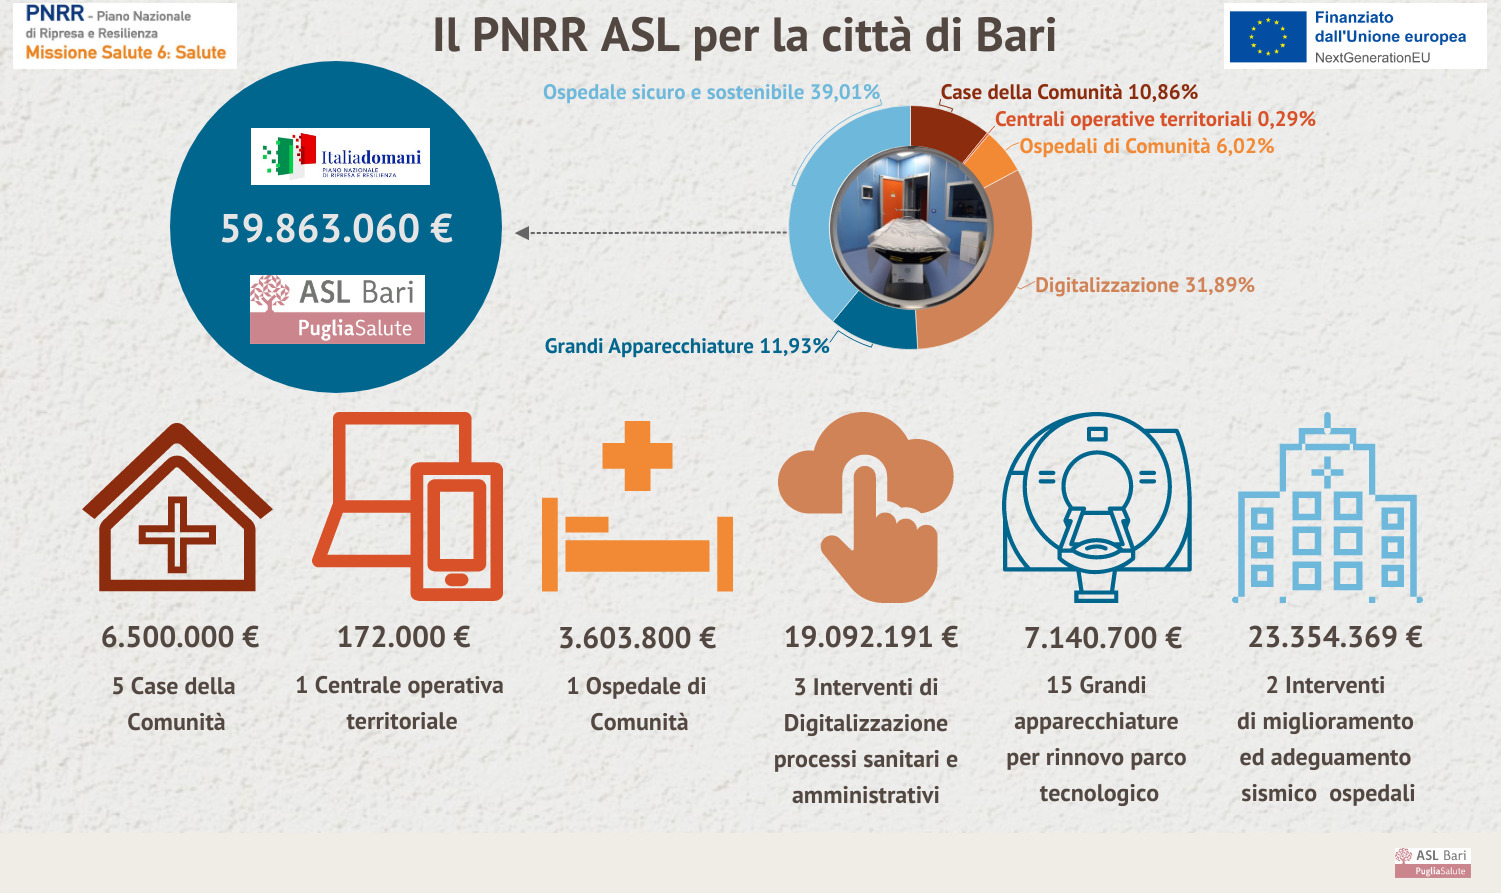 Galleria PNRR, il piano della ASL per la città di Bari: 60 milioni per potenziare territorio e ospedali - Diapositiva 14 di 15